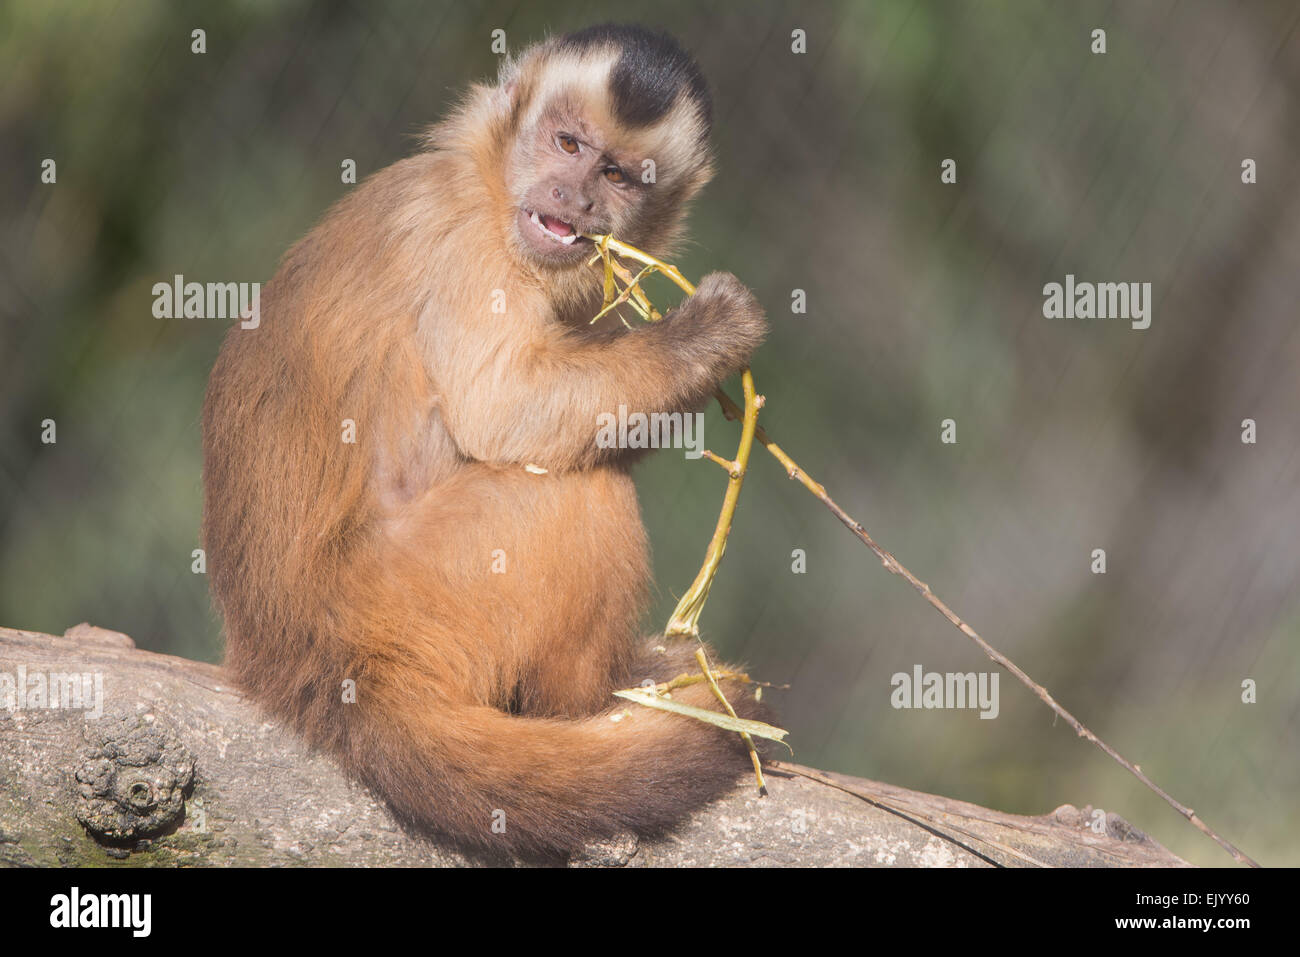 cebus apella,Tufted capuchin,Gehaubter Kapuziner Stock Photo